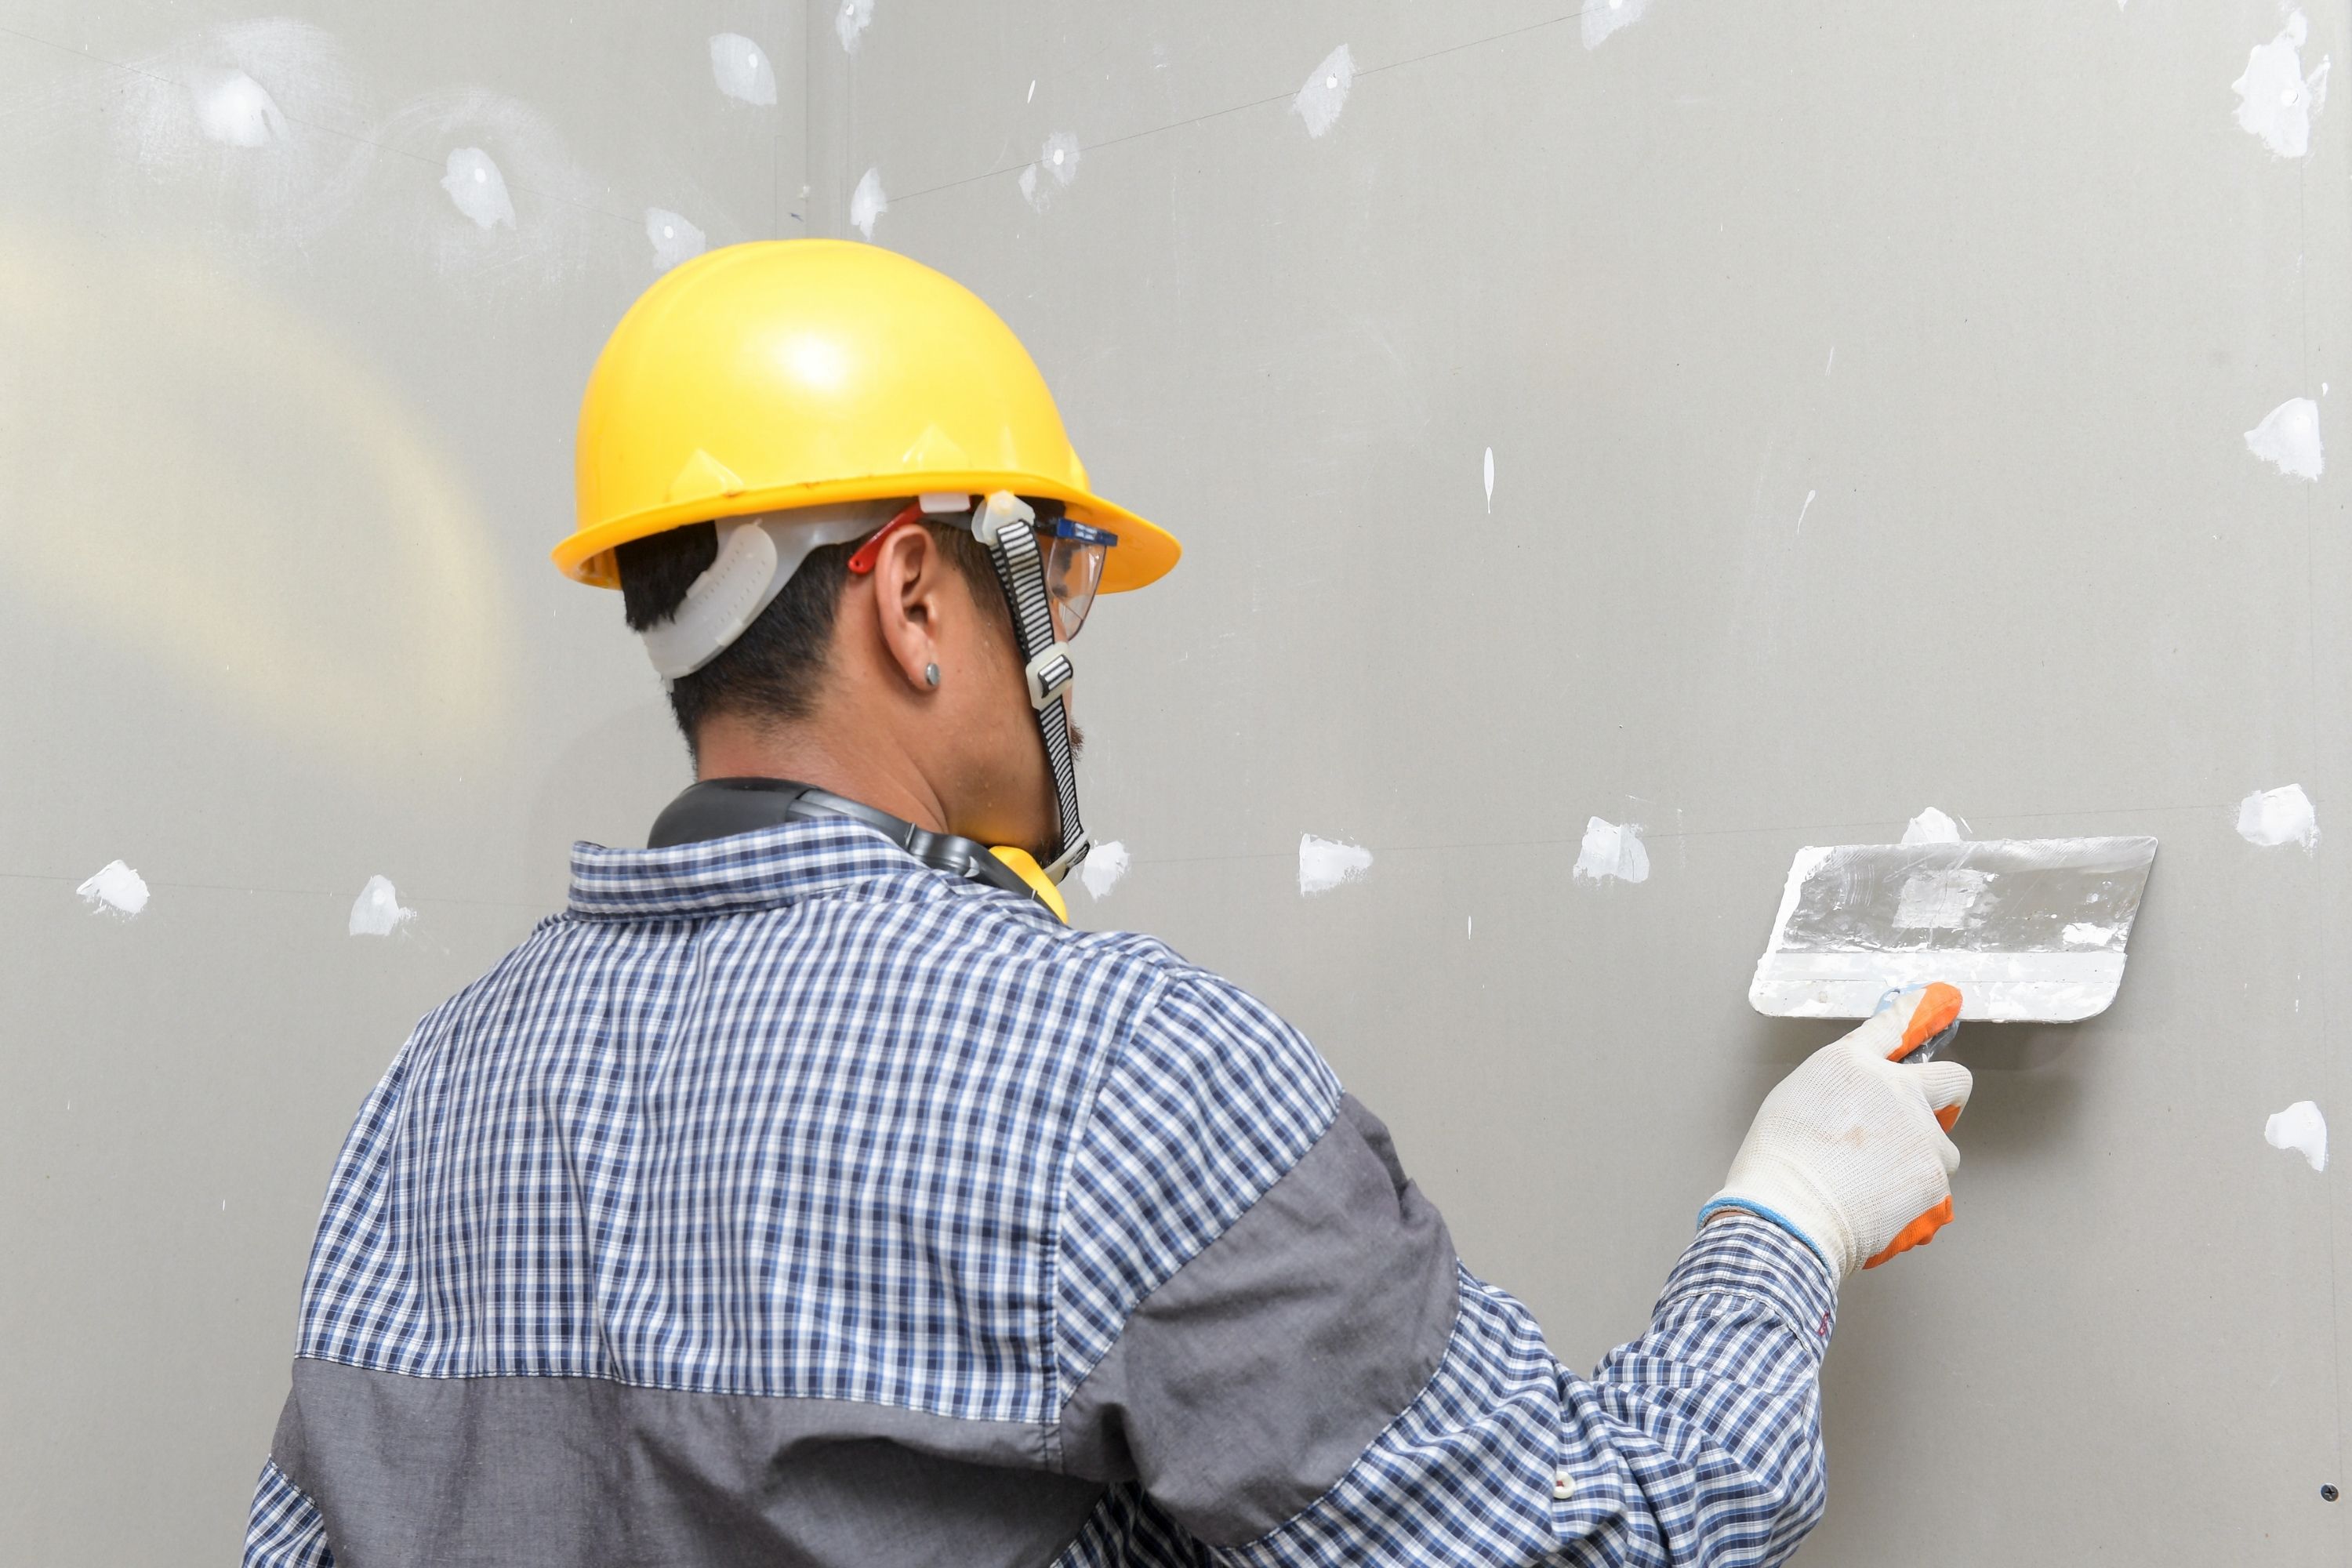 Drywall vs Plaster. How to Tell cracks